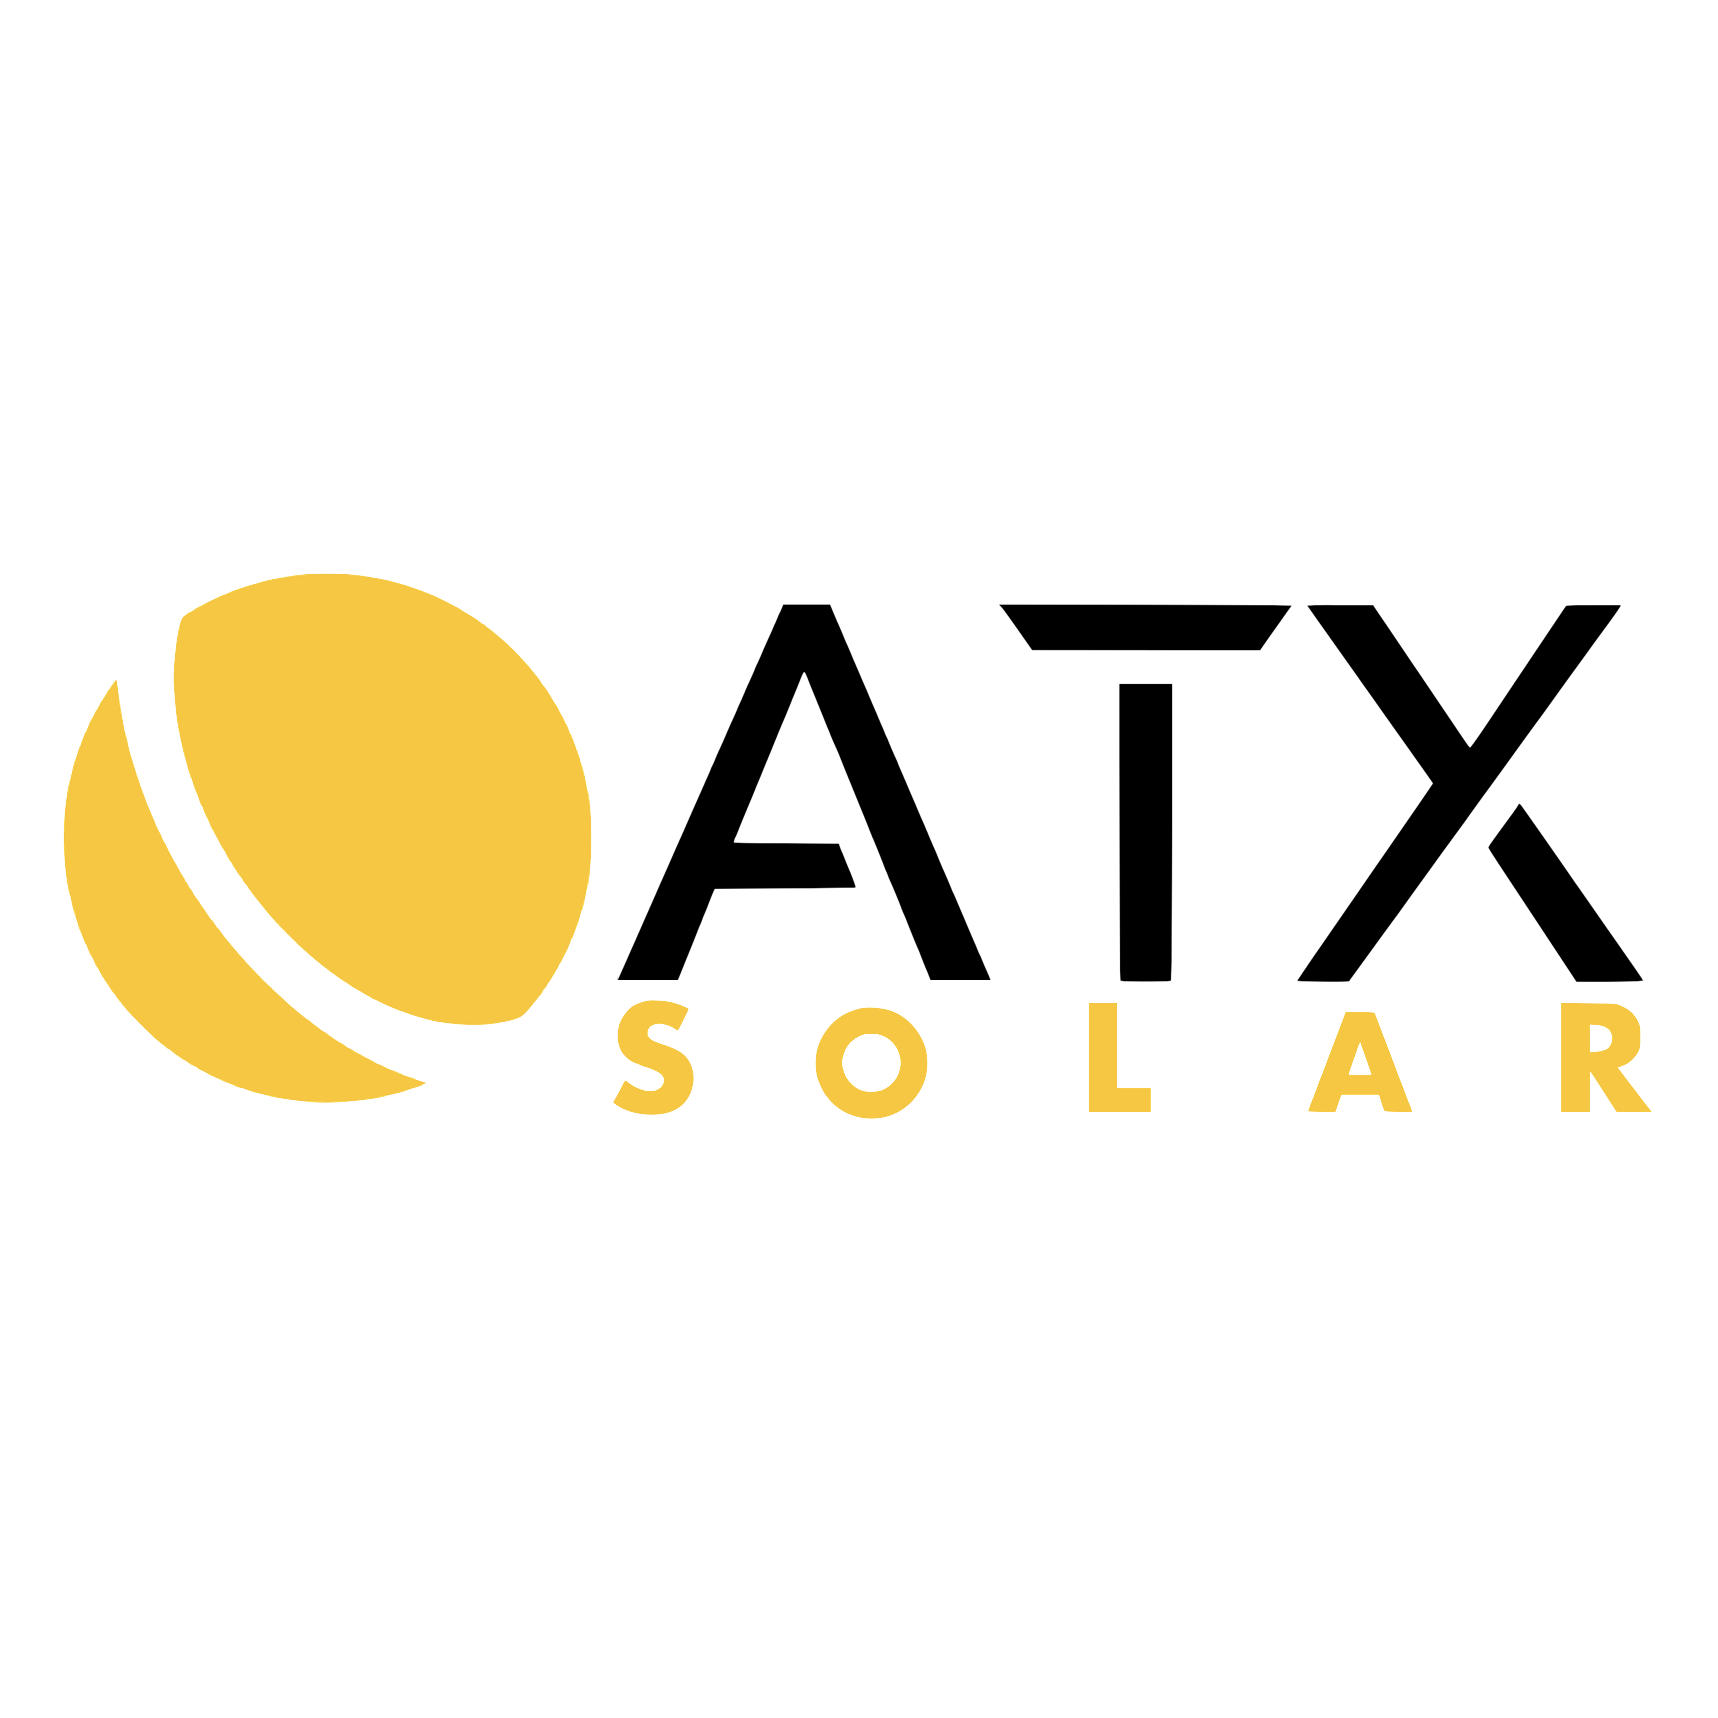 ATX Solar